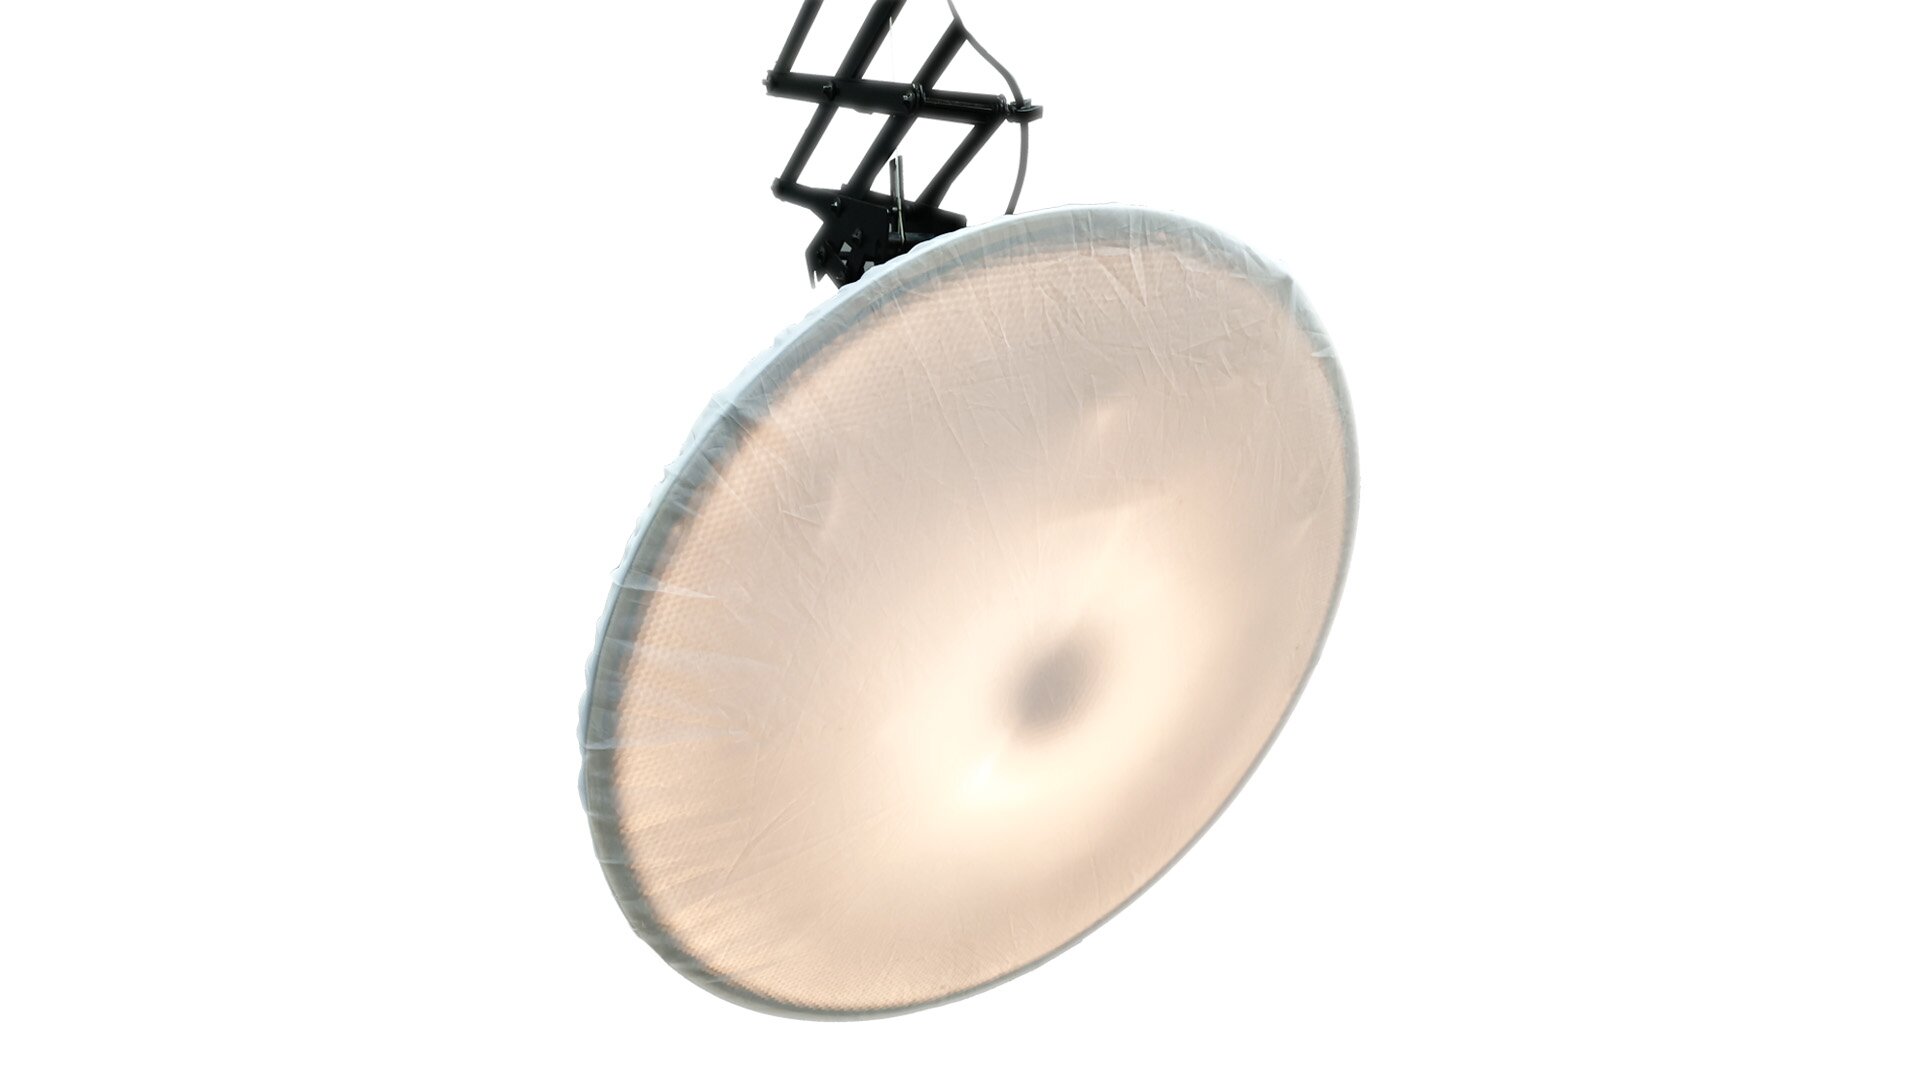 Na zdjęciu widzimy przykład dyfuzora w formie softboxu czyli białego materiału nałożonego na lampę zamocowaną do ramienia wysięgnika. 